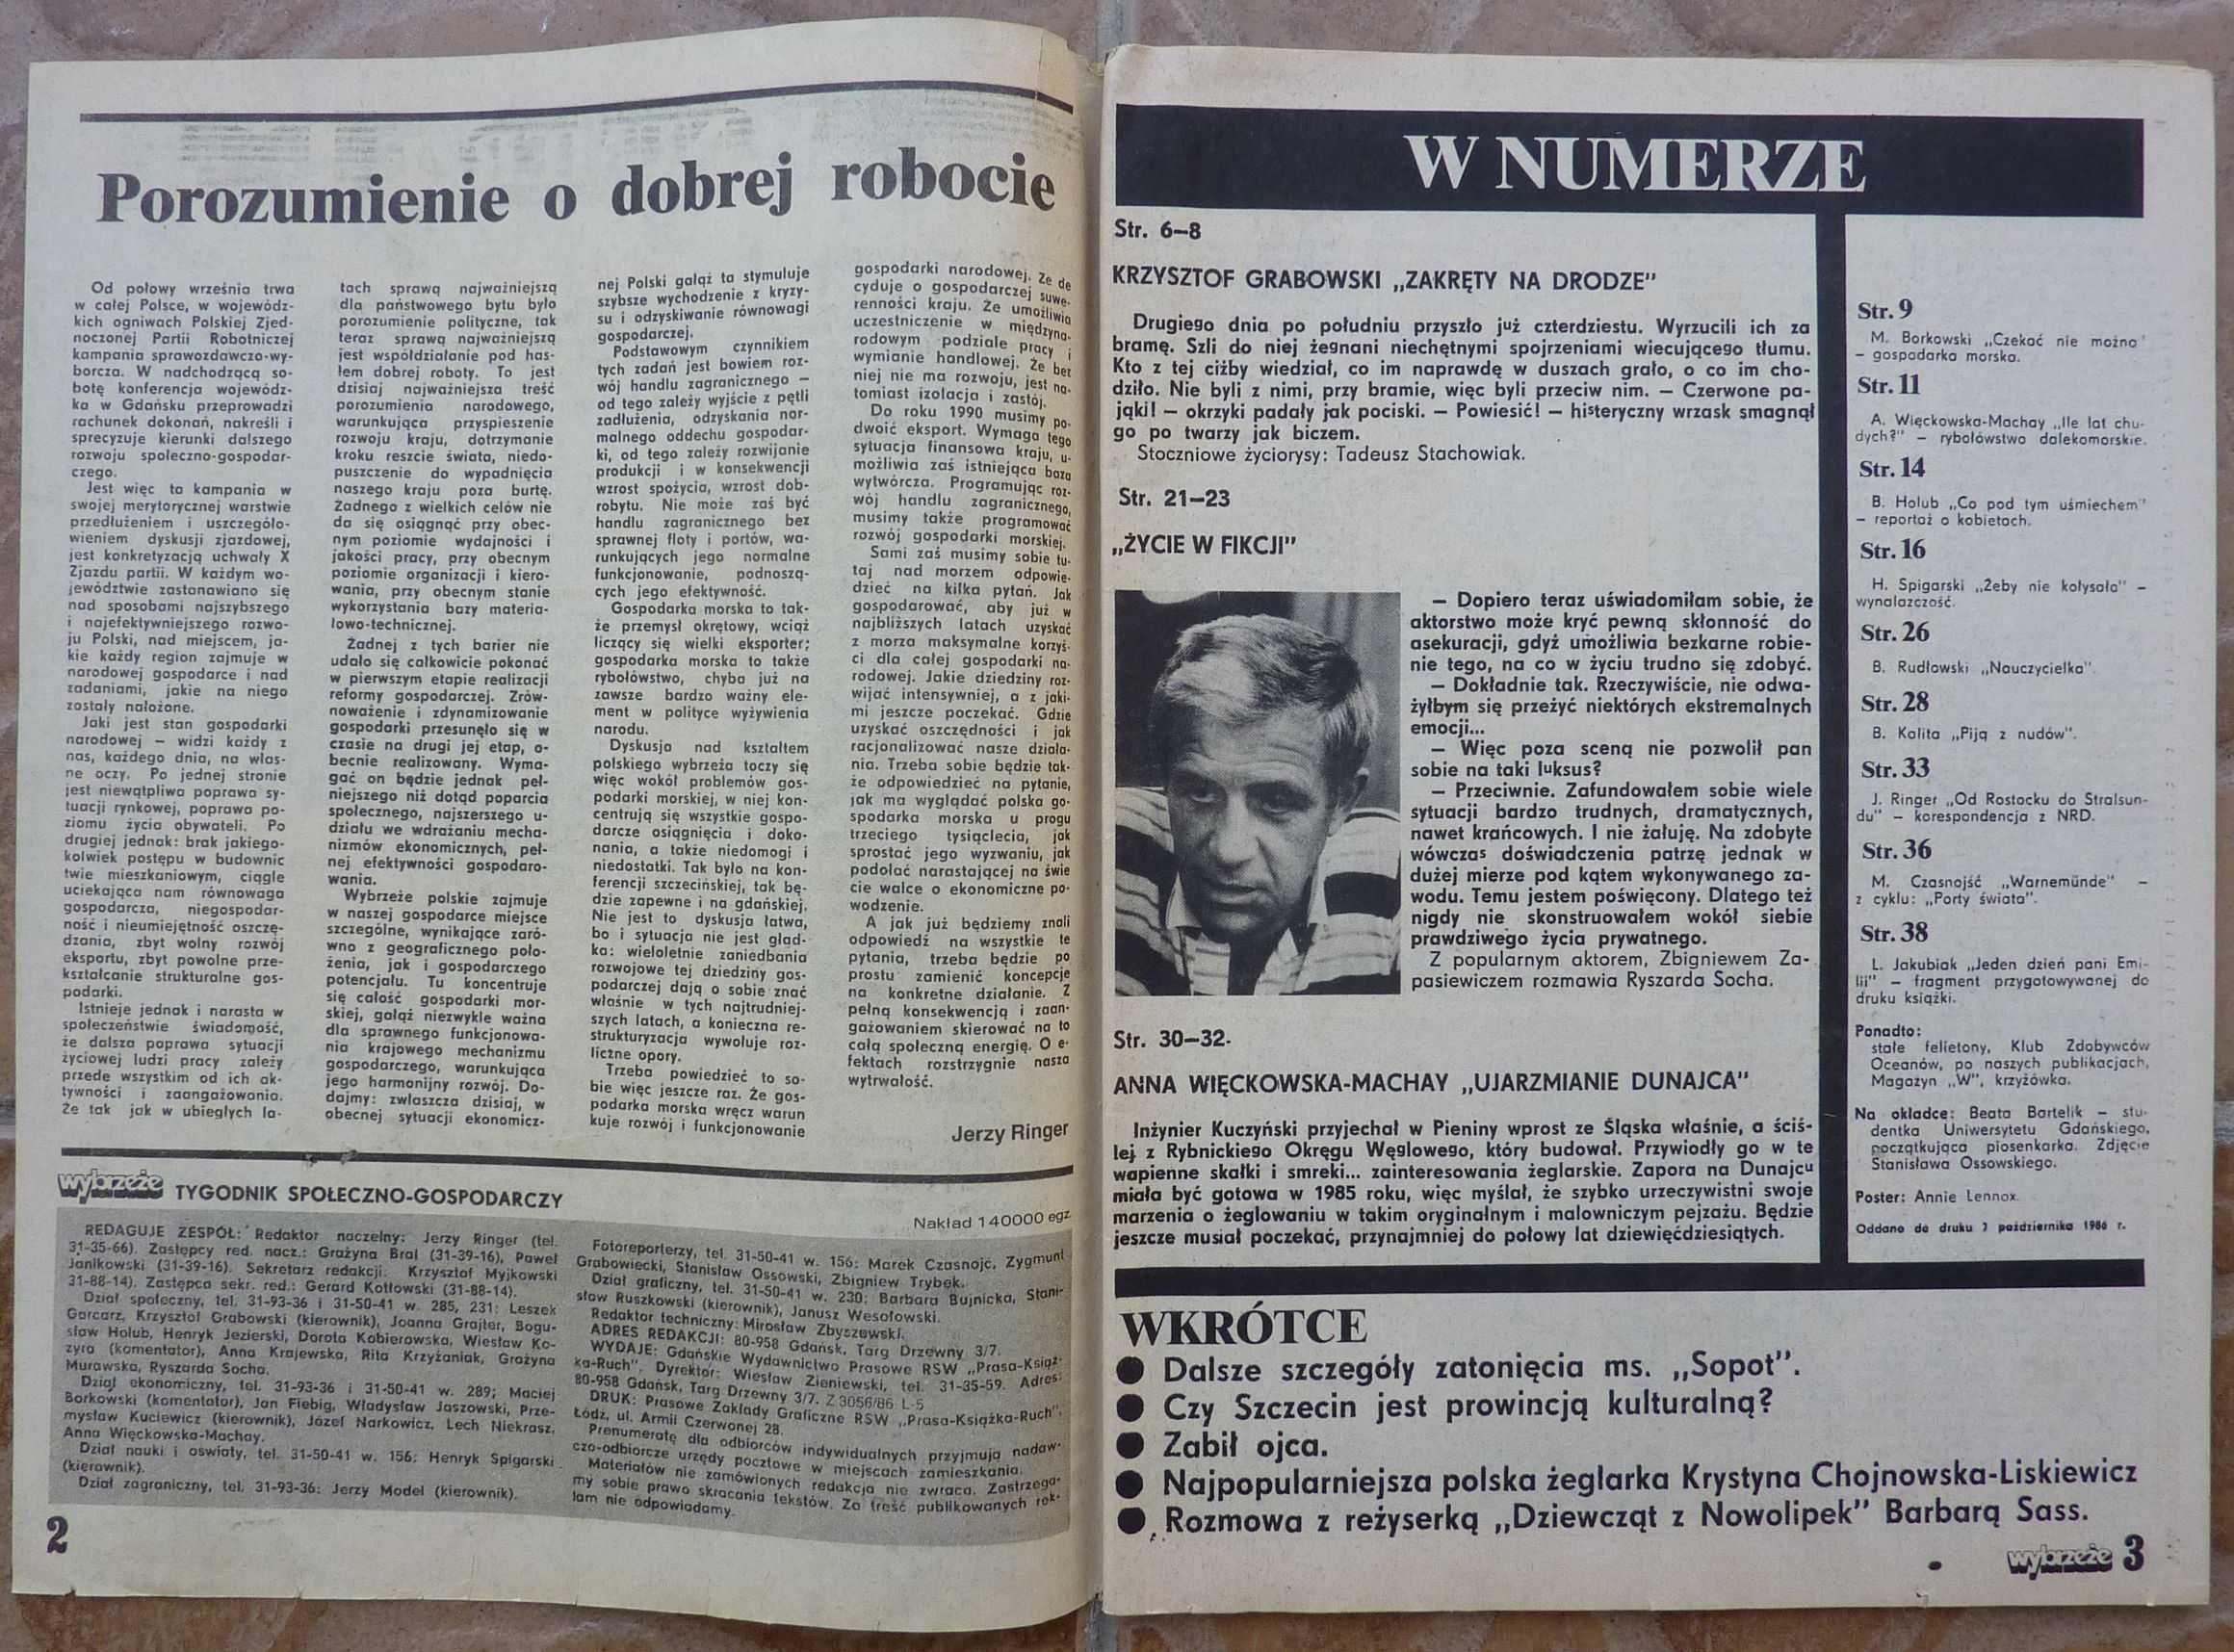 WYBRZEŻE tygodnik nr 42/1986 - plakat - ANNIE LENNOX